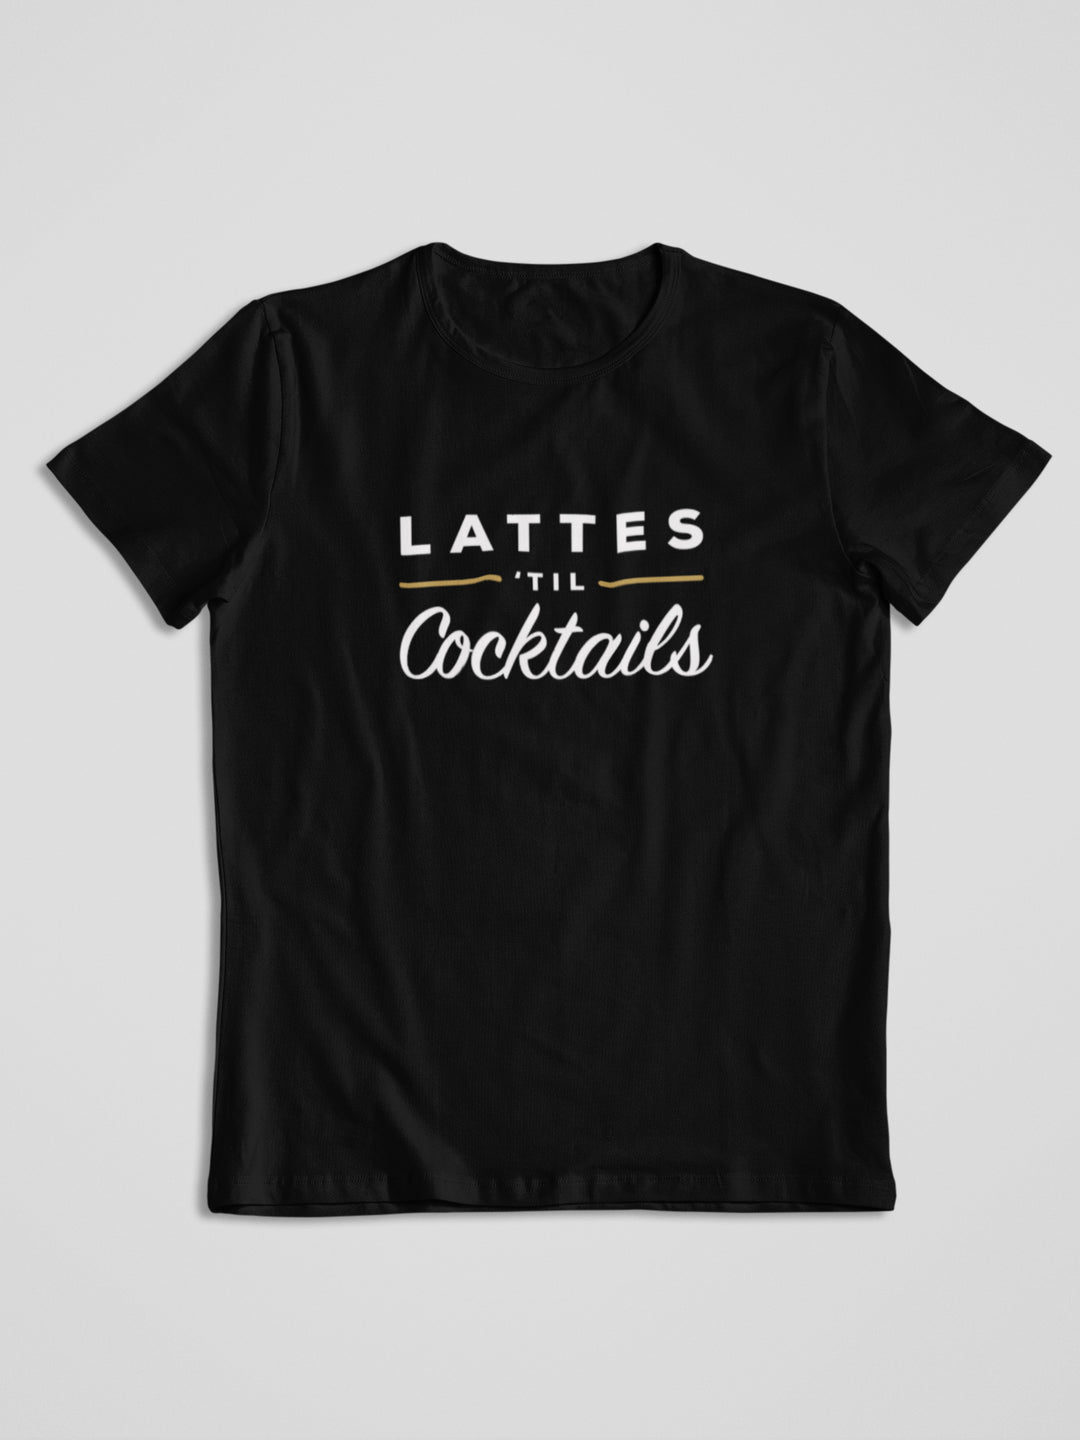 S (4-6) / Black Lattes til slogan crew neck t-shirt - Tony by Toni